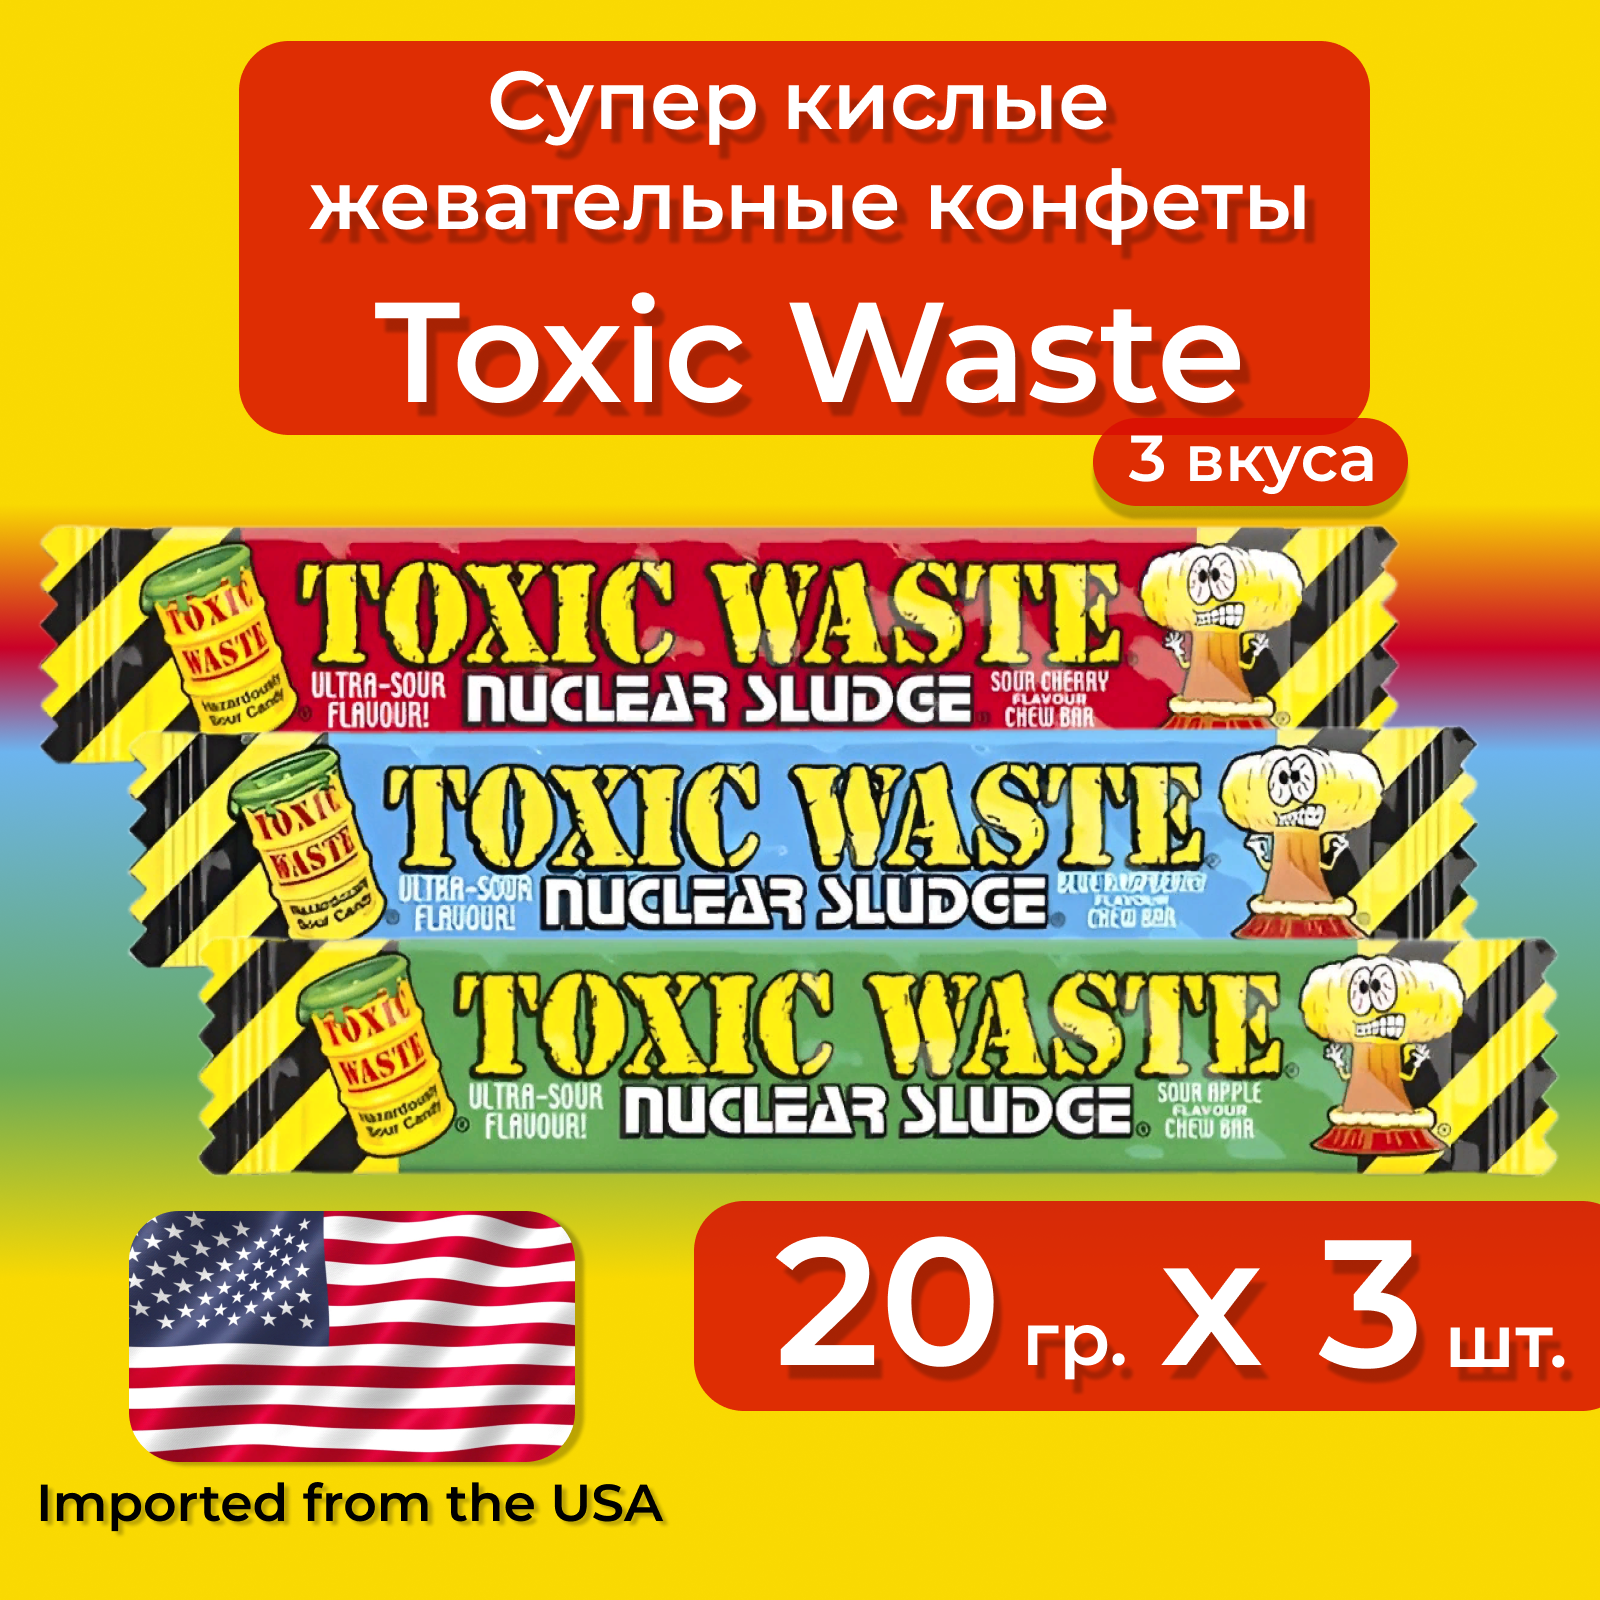 Жевательные кислые конфеты Toxic Waste Ассорти вкусов (яблоко, вишня, голубая малина), 3 штуки по 20 г